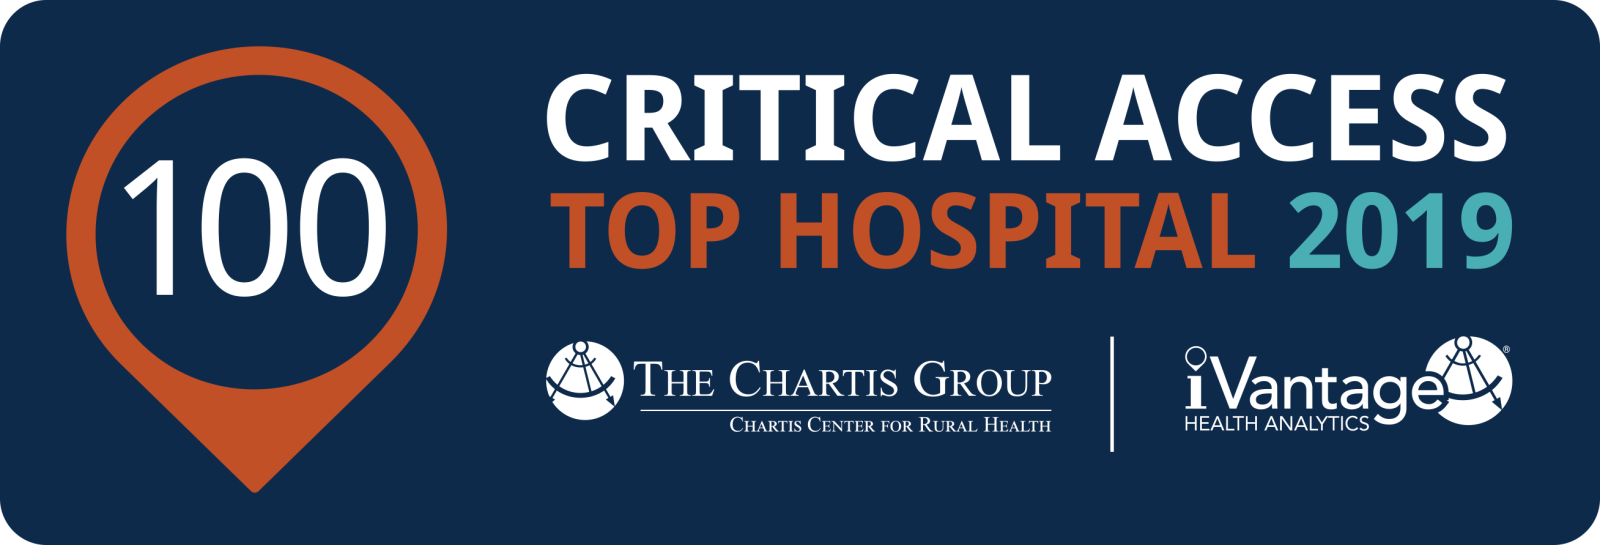 Top 100 Critical Access Hospitals 2016